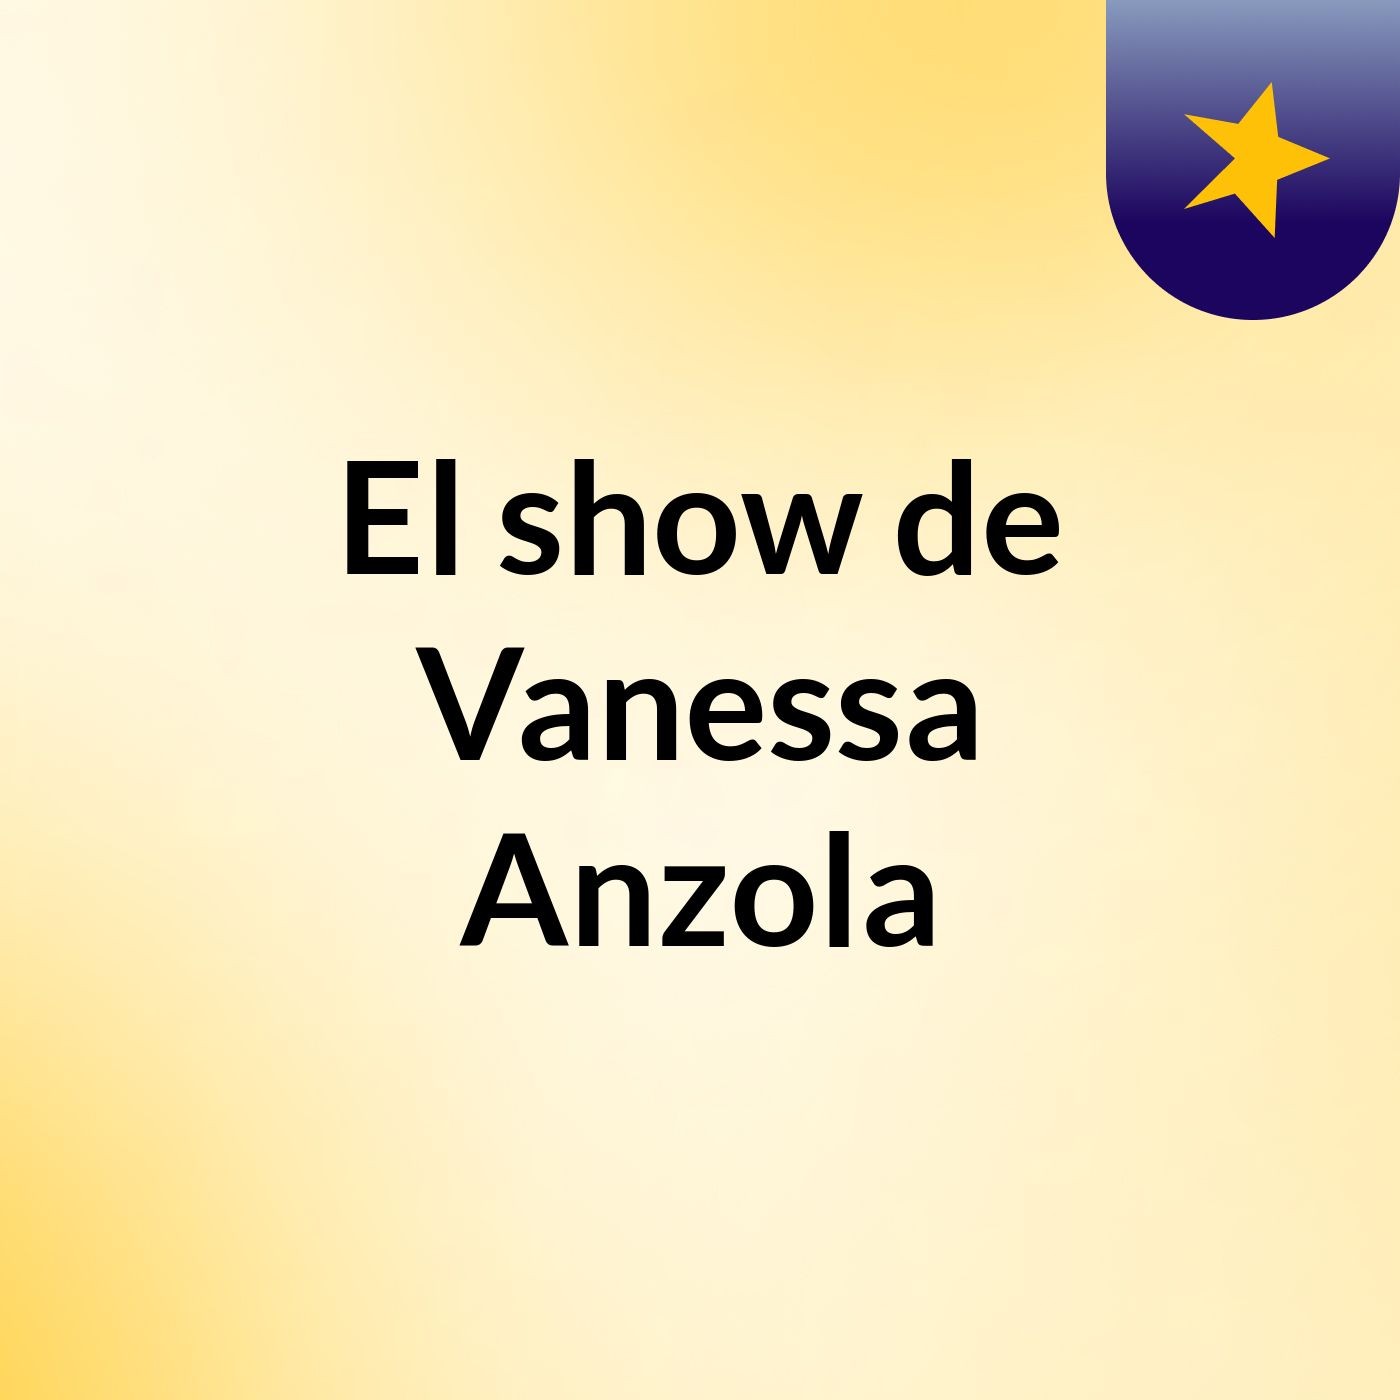 El show de Vanessa Anzola